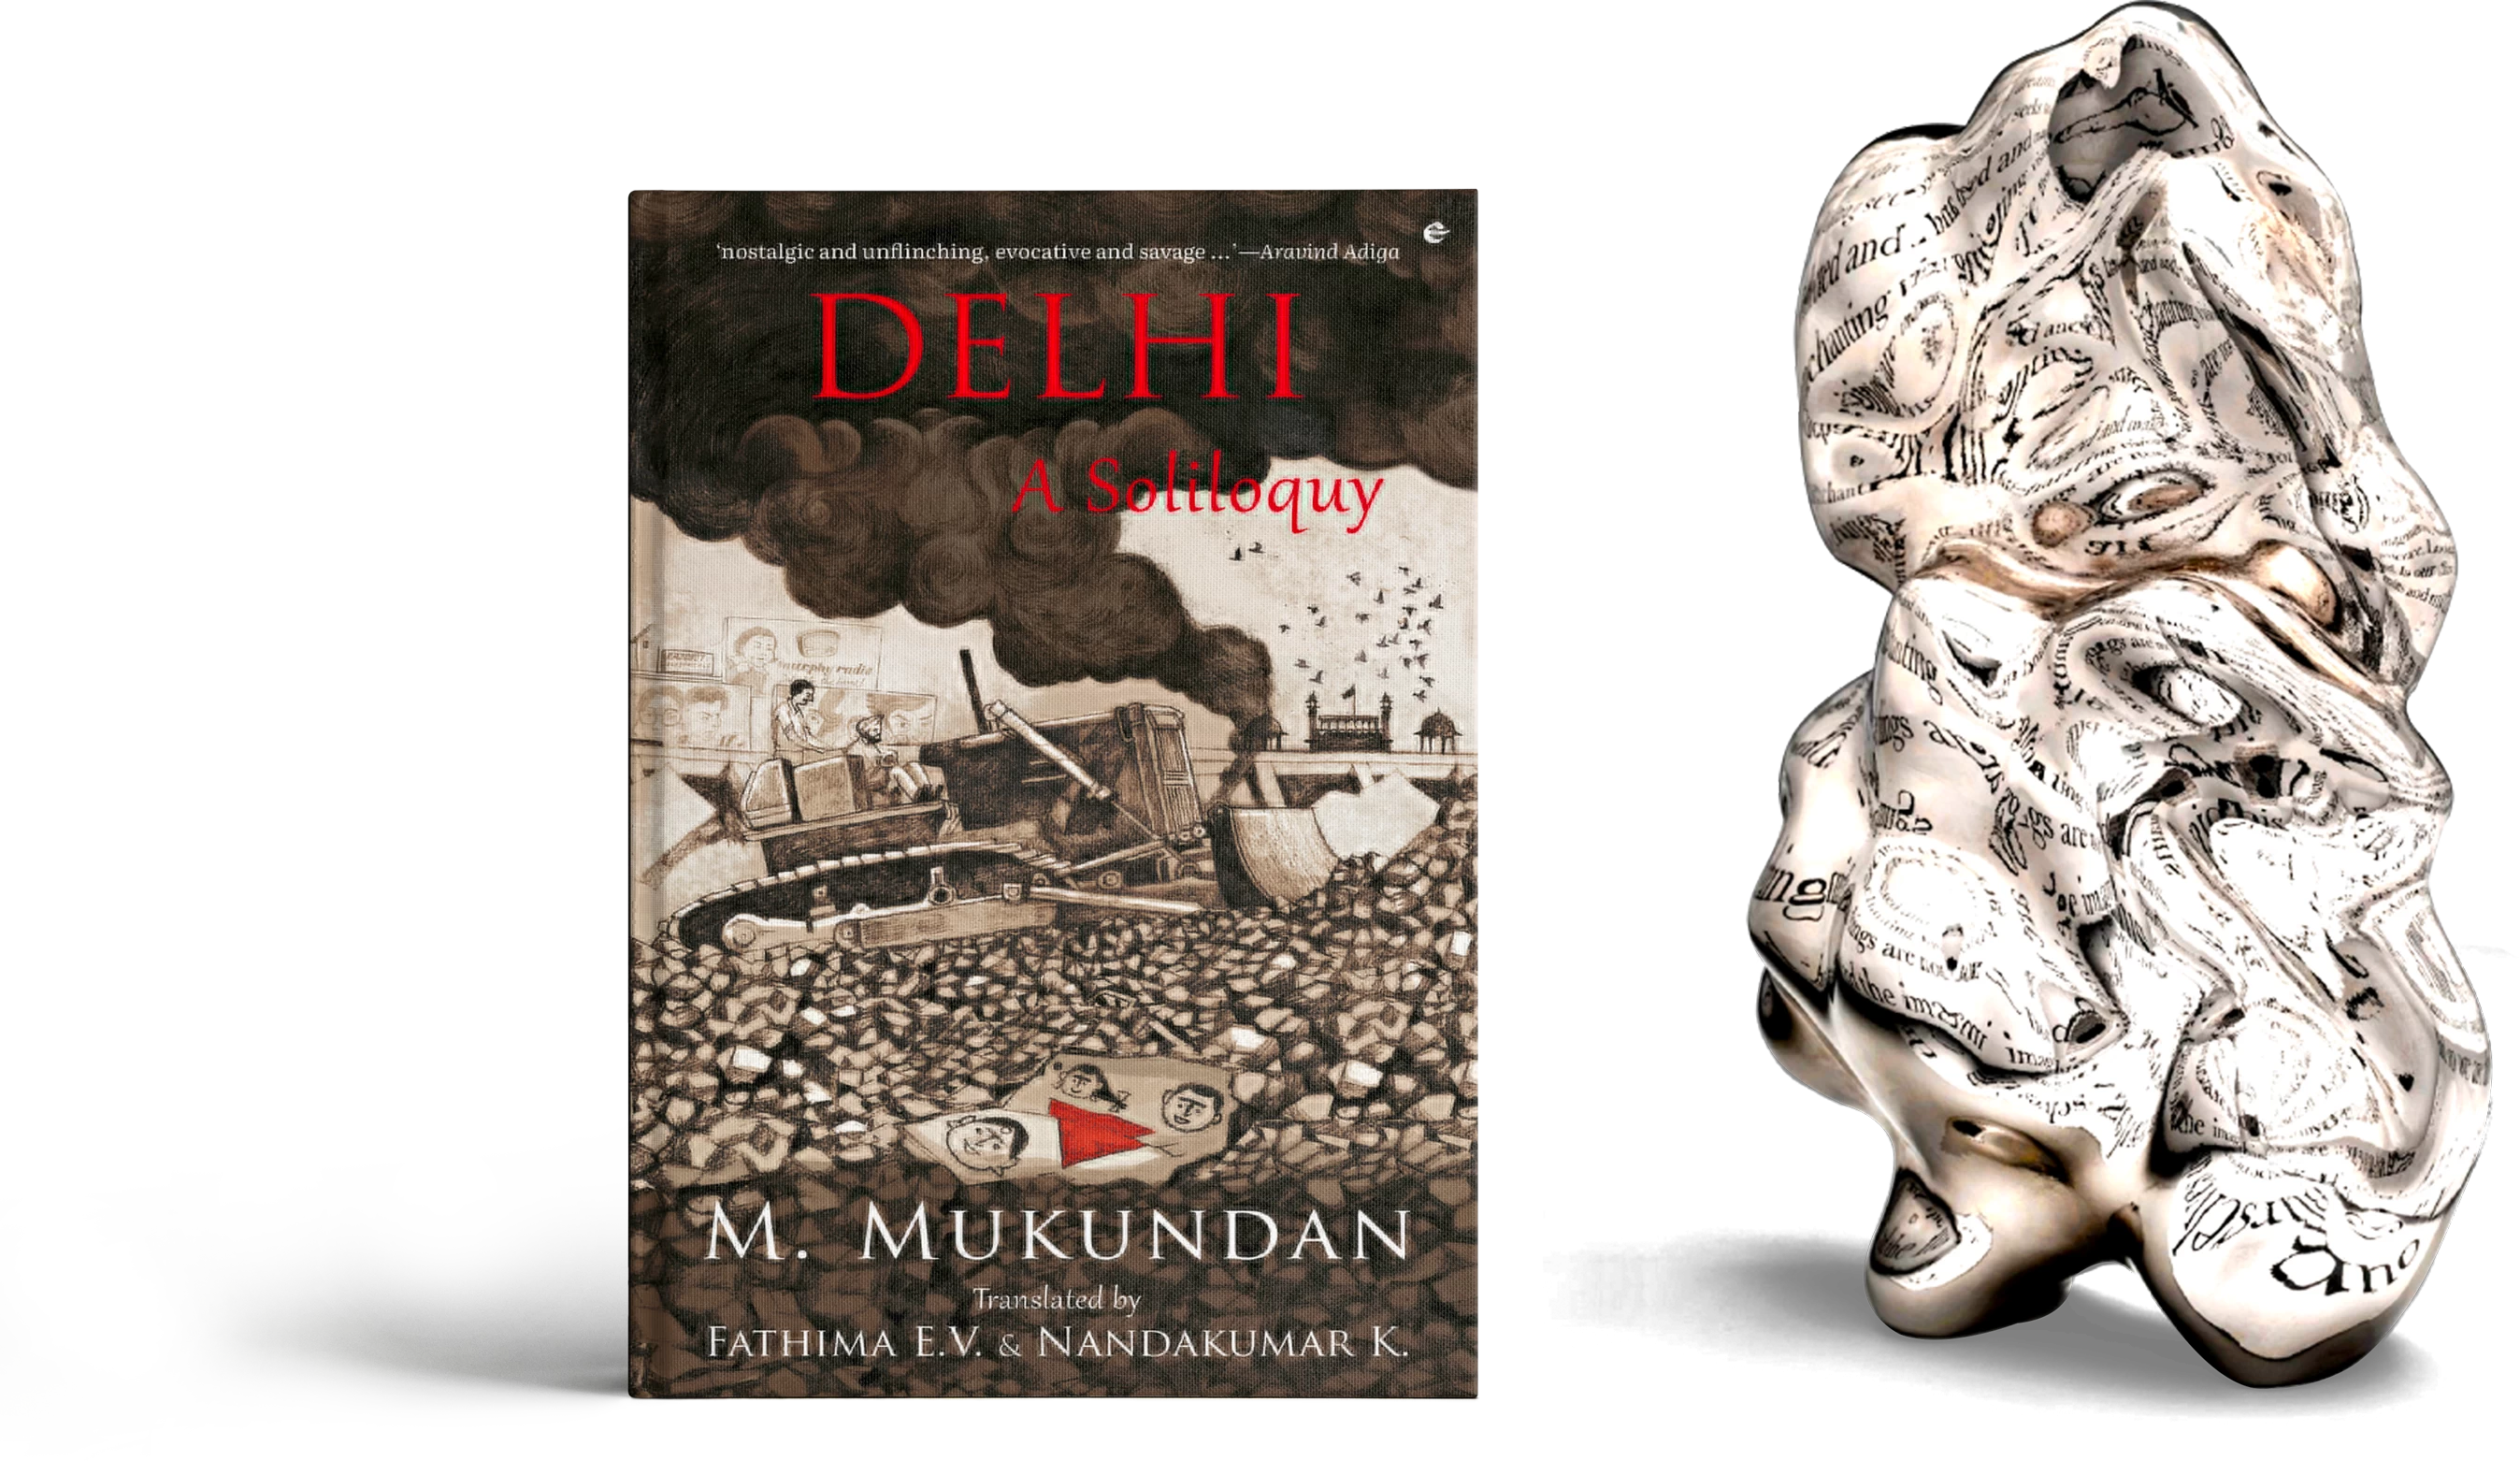 Delhi: A Soliloquy